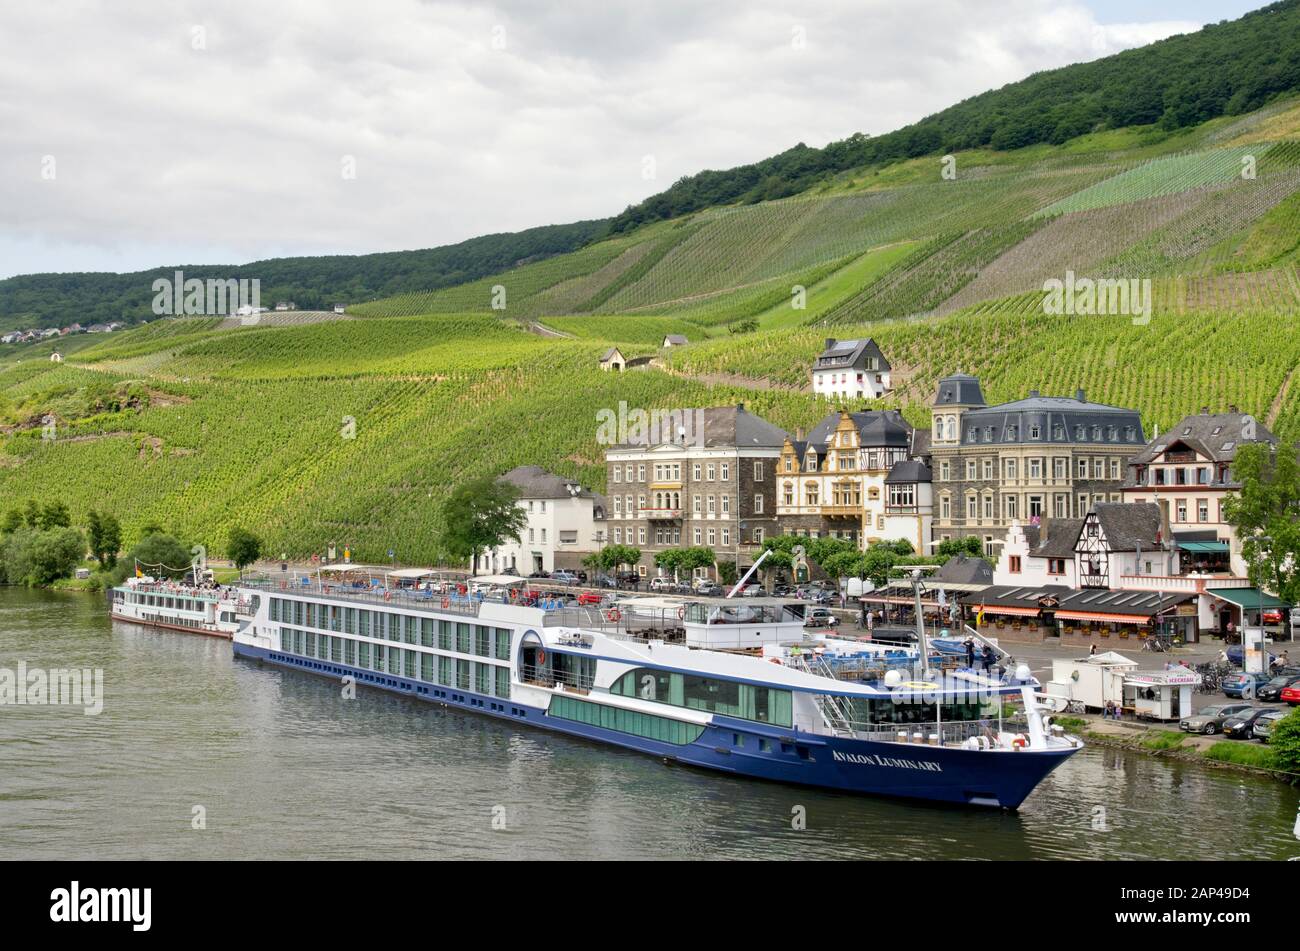 Flusskreuzfahrtschiff am Piesport, Moseltal, Deutschland Stockfoto